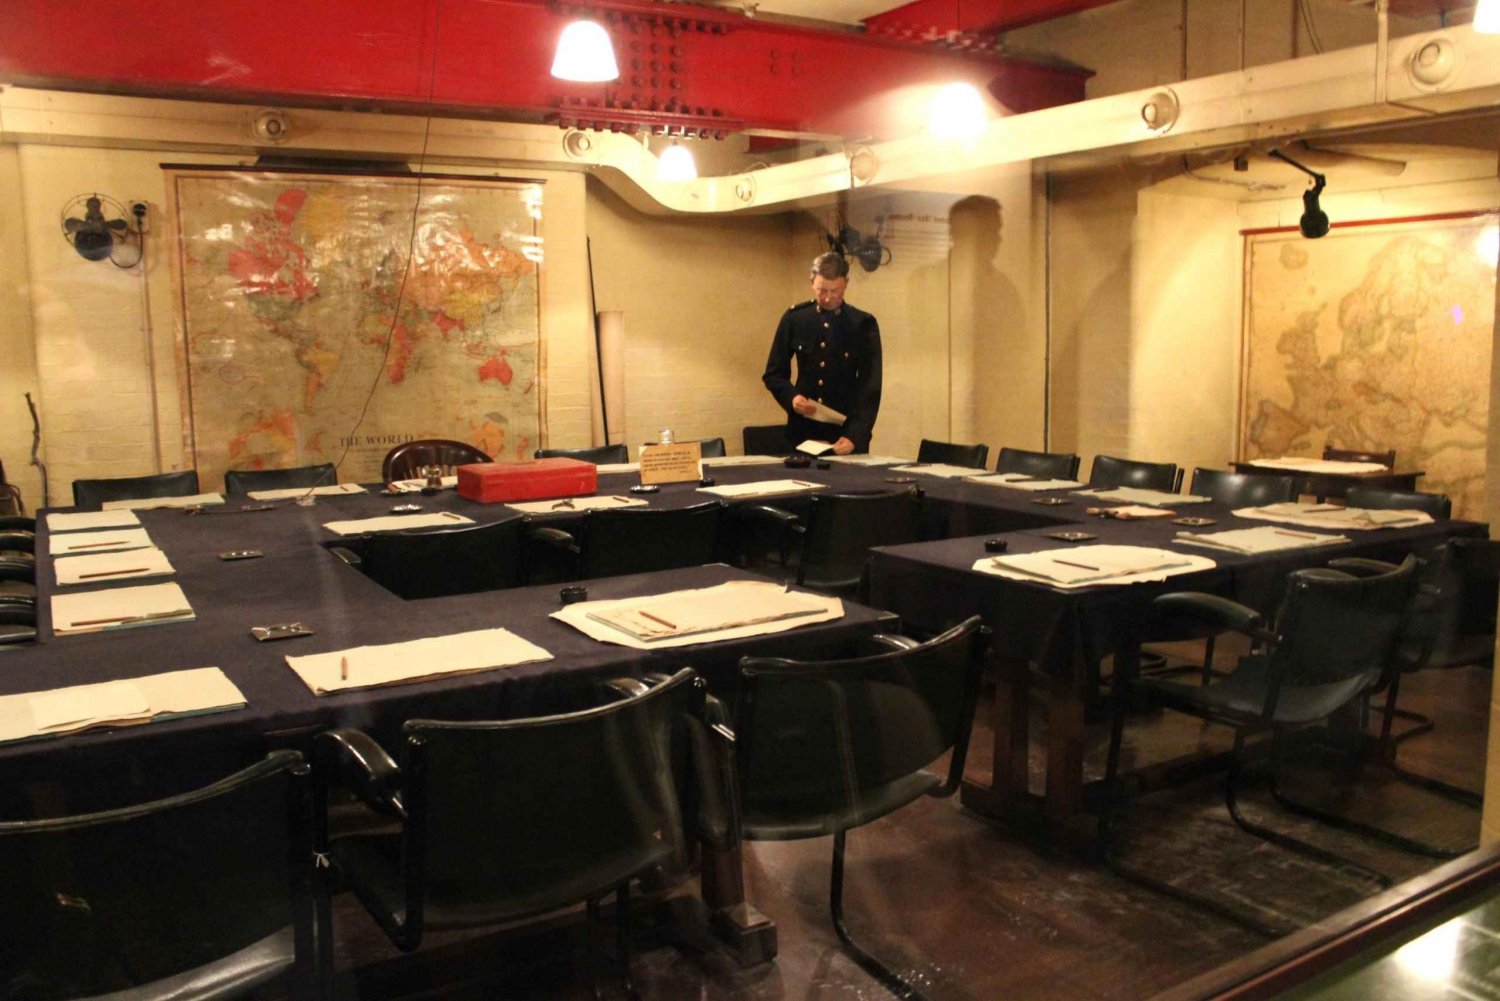 Londen: rondleiding 30 topattracties en Churchill War Rooms